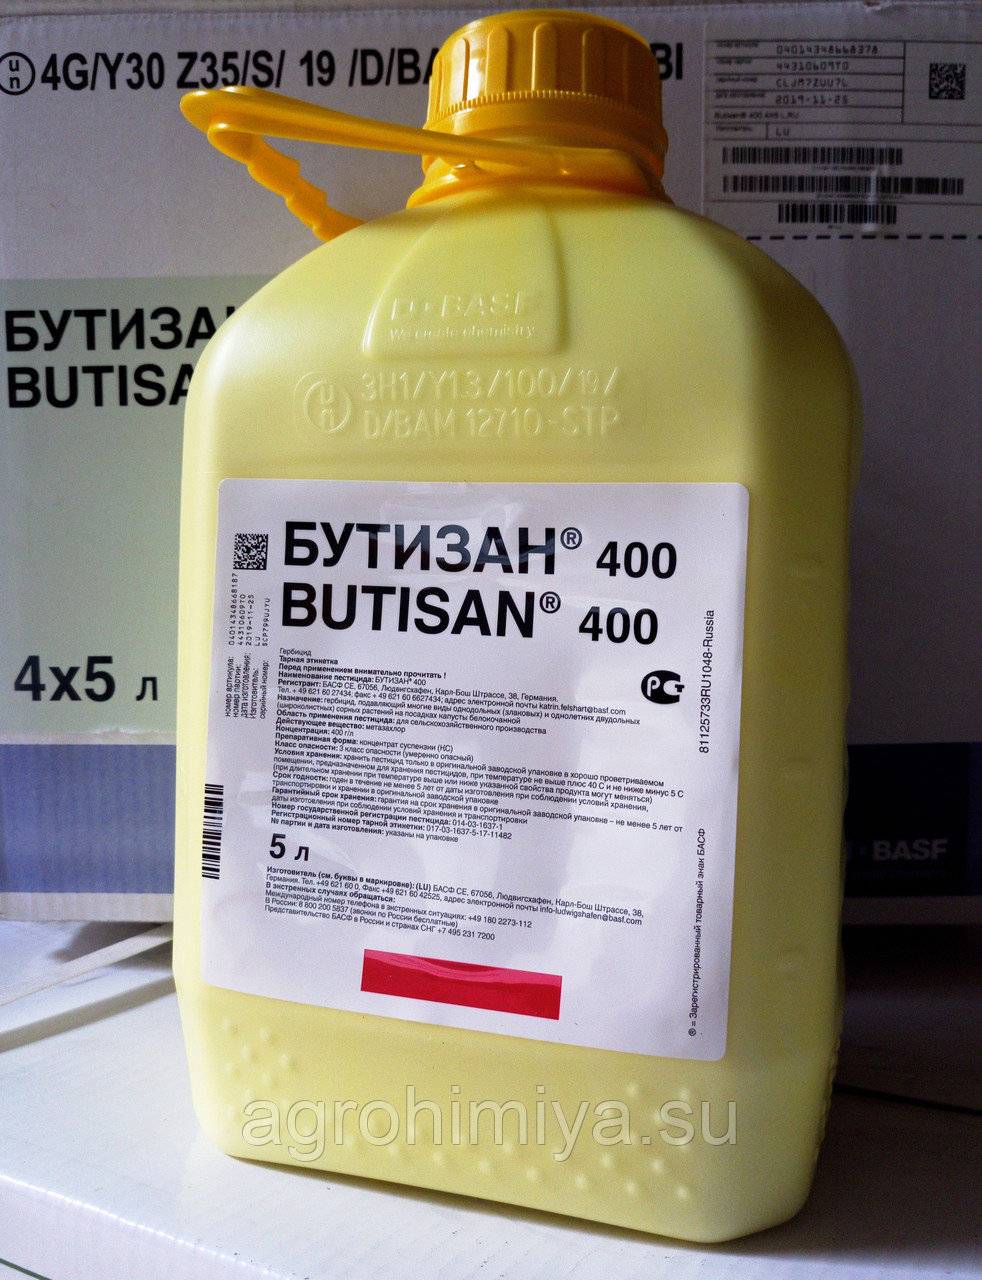 Инструкция по применению и состав гербицида Бутизан 400, нормы расхода